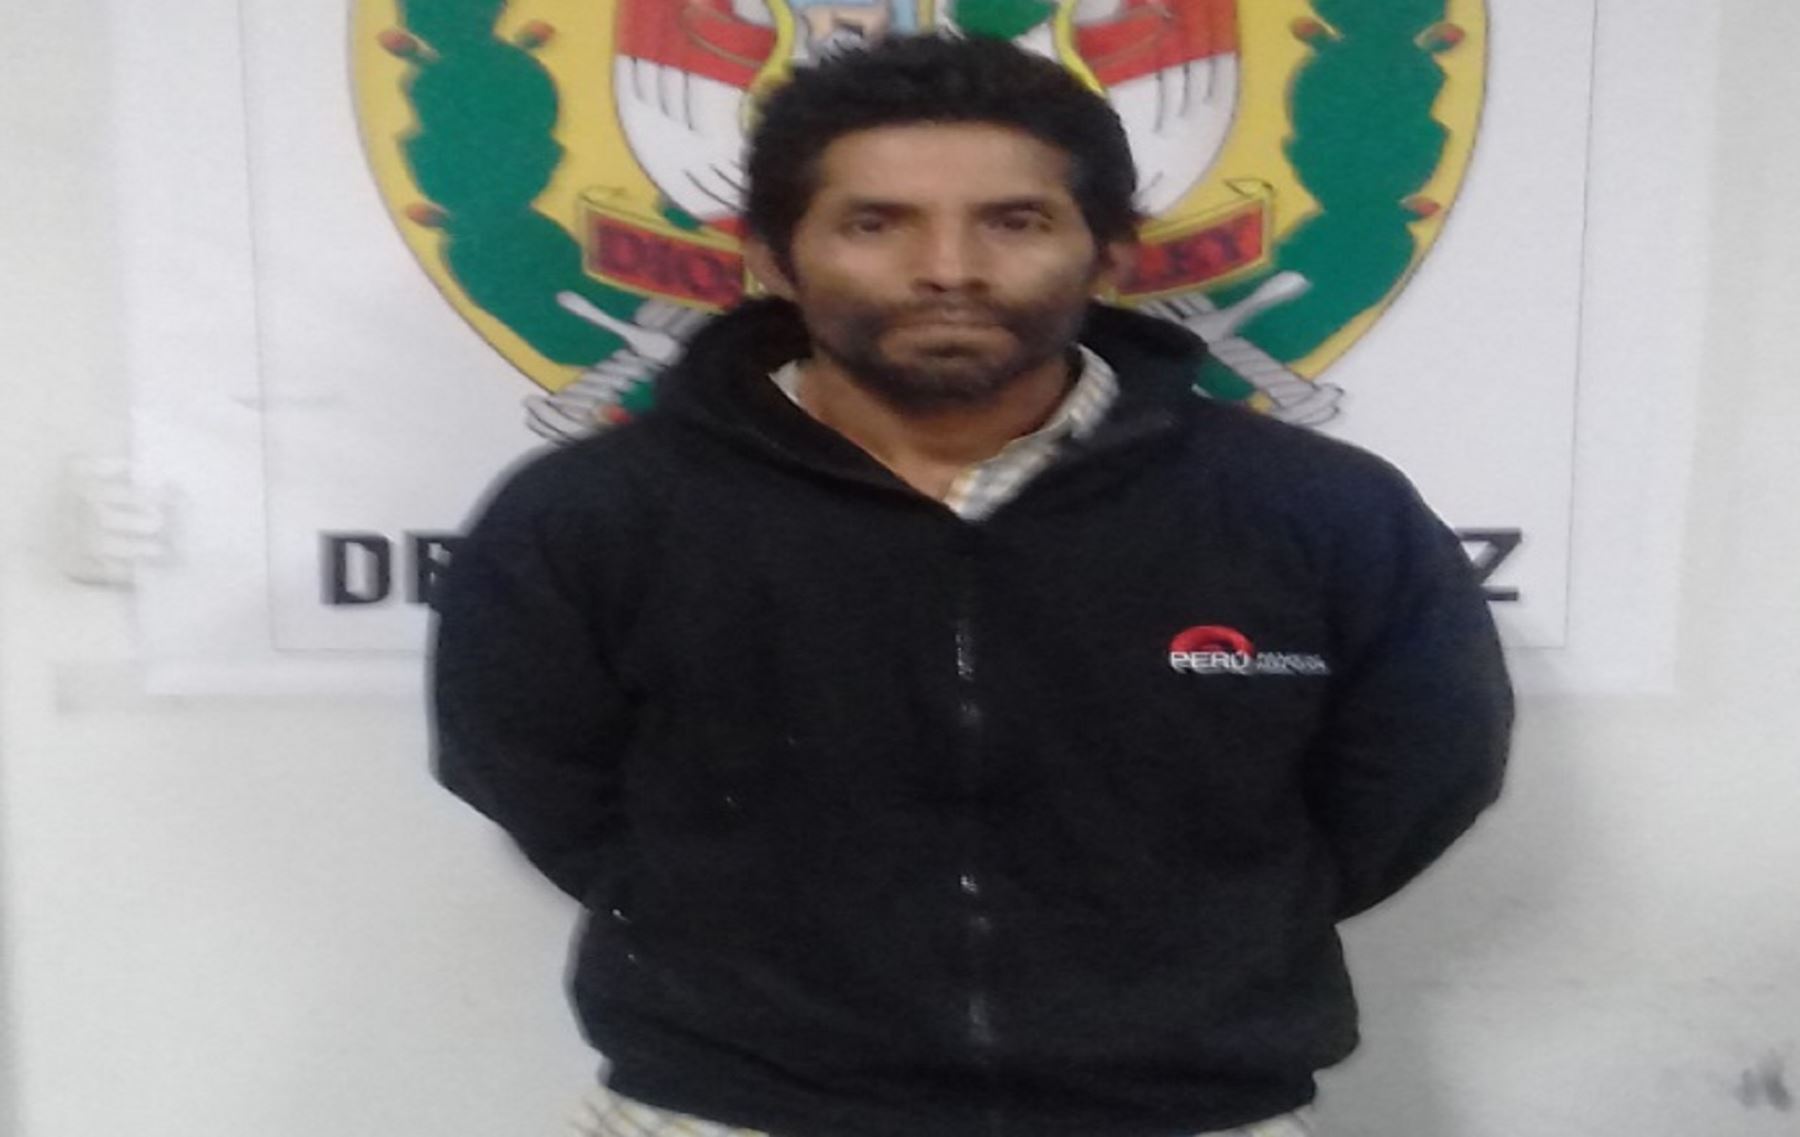 Este prófugo fue detenido el 20 de noviembre por personal de la comisaría de Pamparomás en el caserío de Ullpan, distrito de Pamparomás, provincia de Huaylas